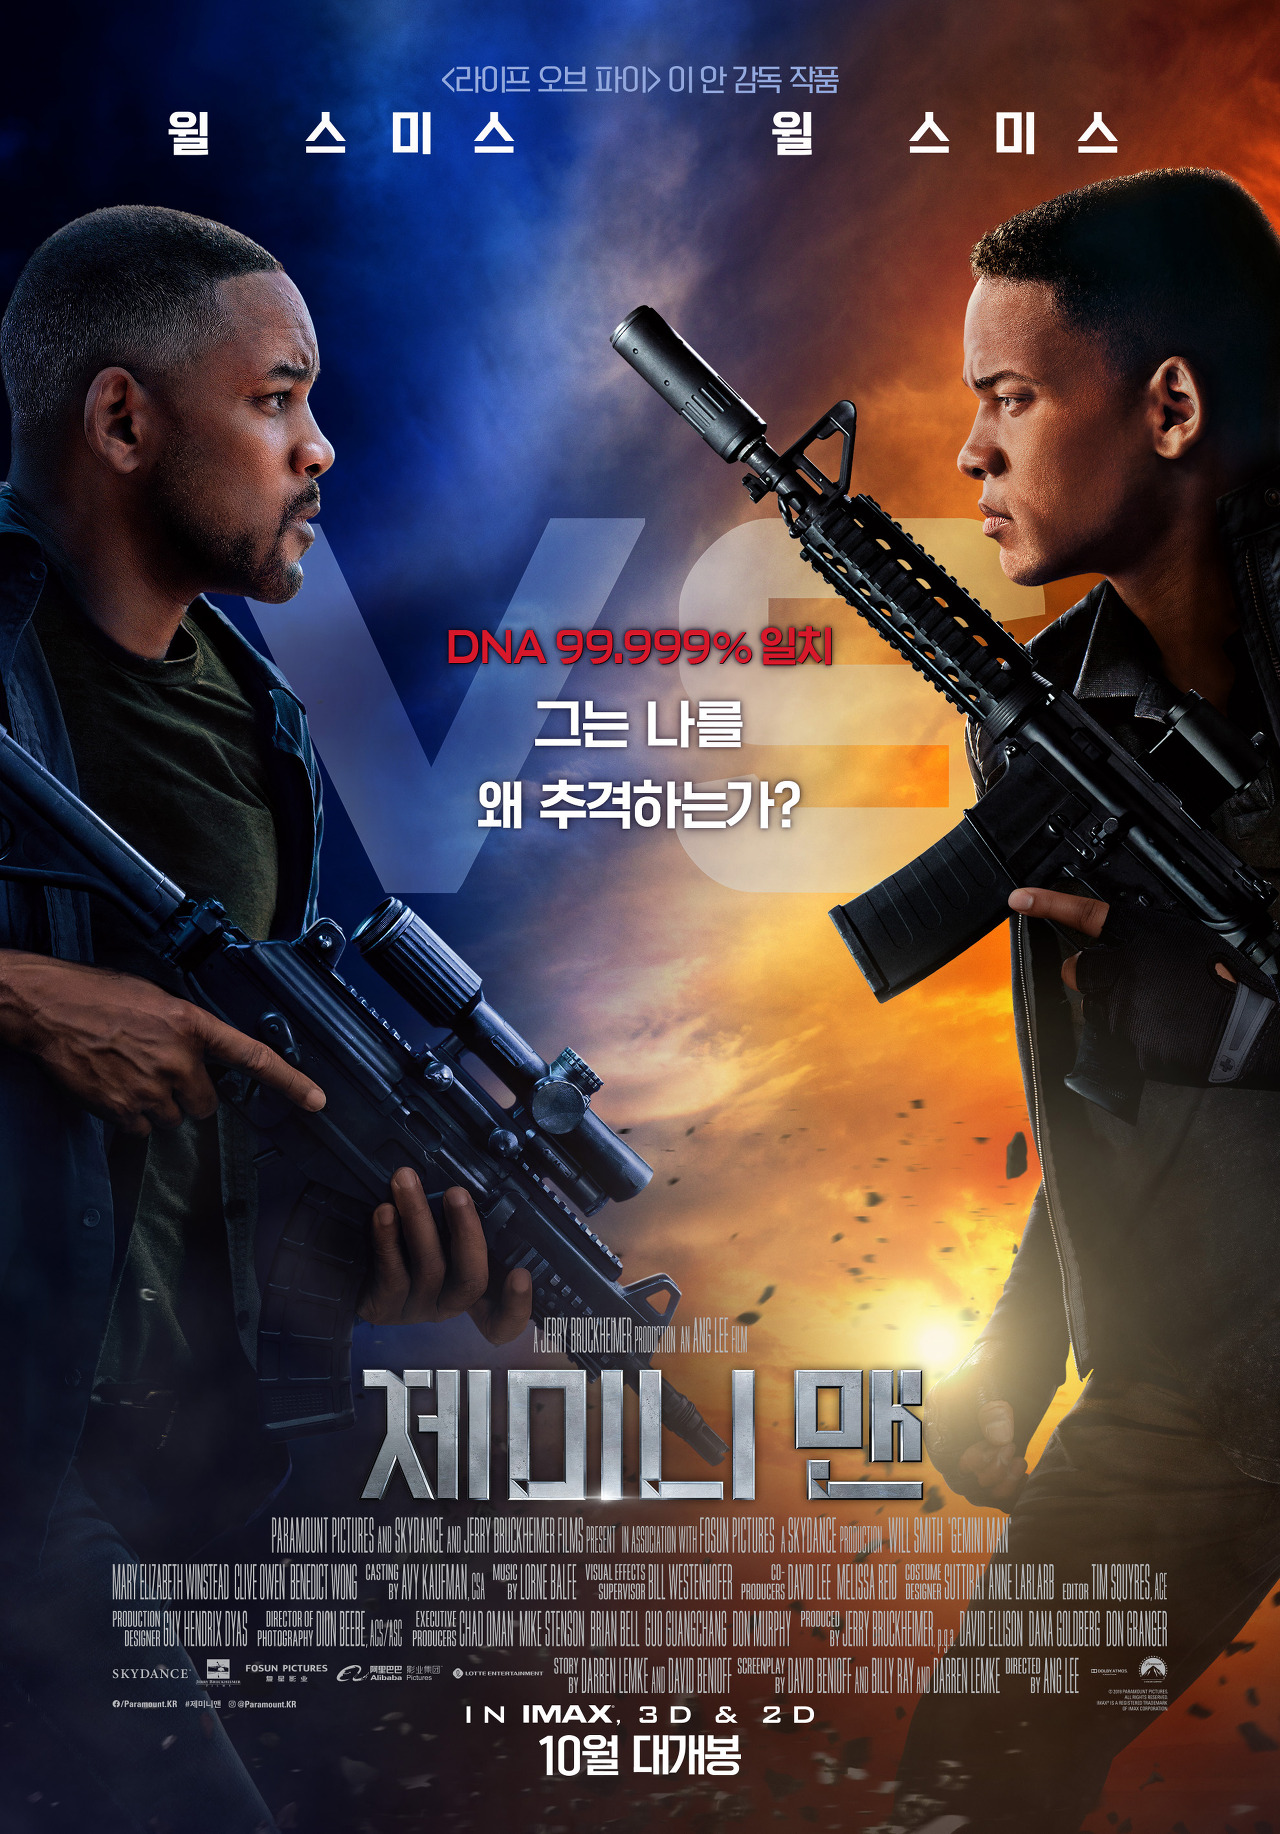 똑같이 생긴 두 사람이 총을 들고 바라보는 모습의 영화 &lt;제미니 맨&gt; 포스터.